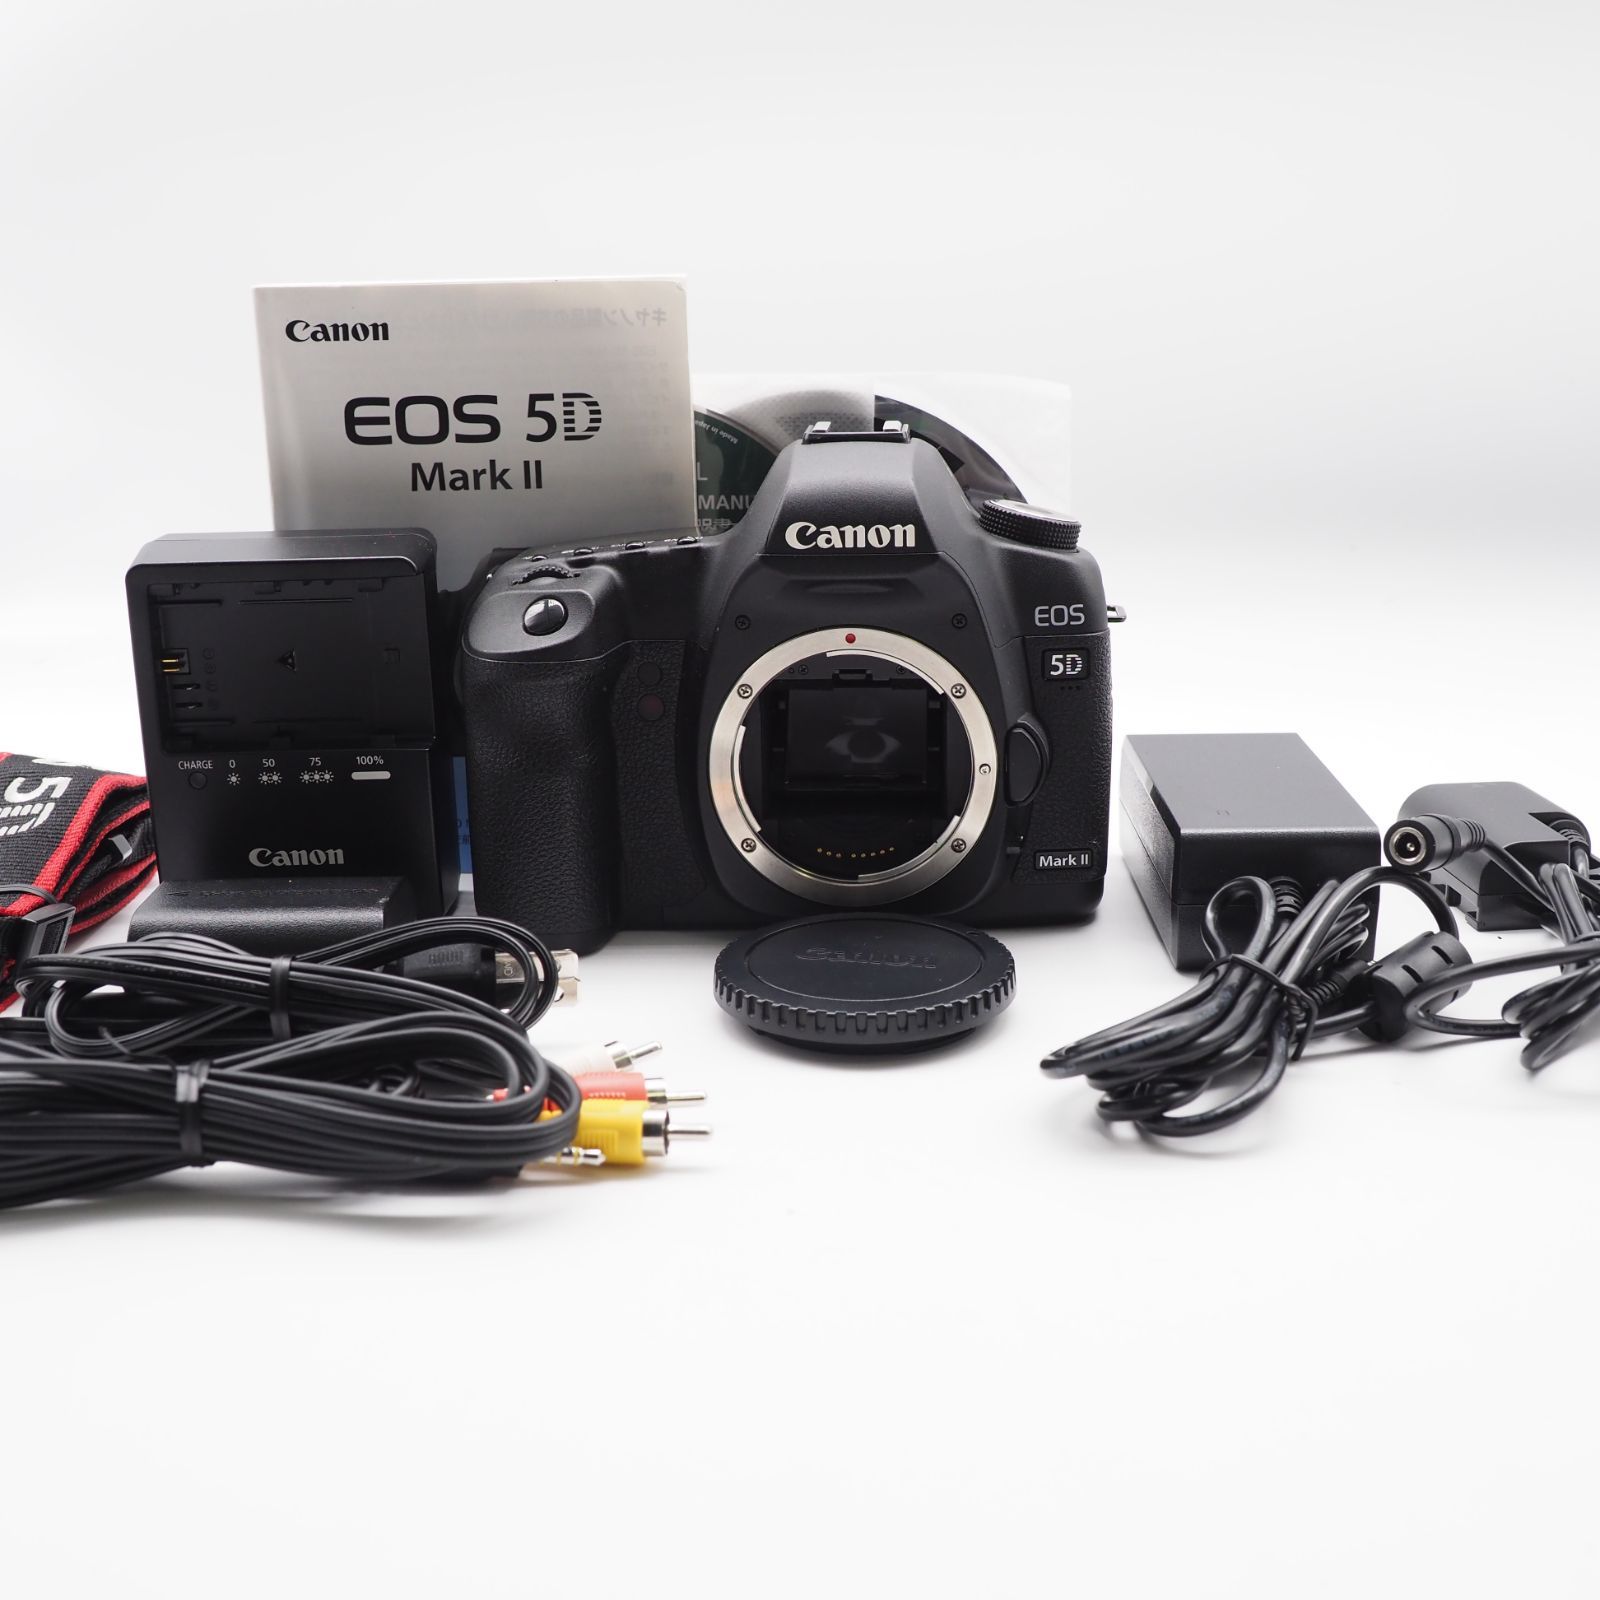 Canon デジタル一眼レフカメラ EOS 5D MarkII ボディ #2627 スズキカメラ メルカリ